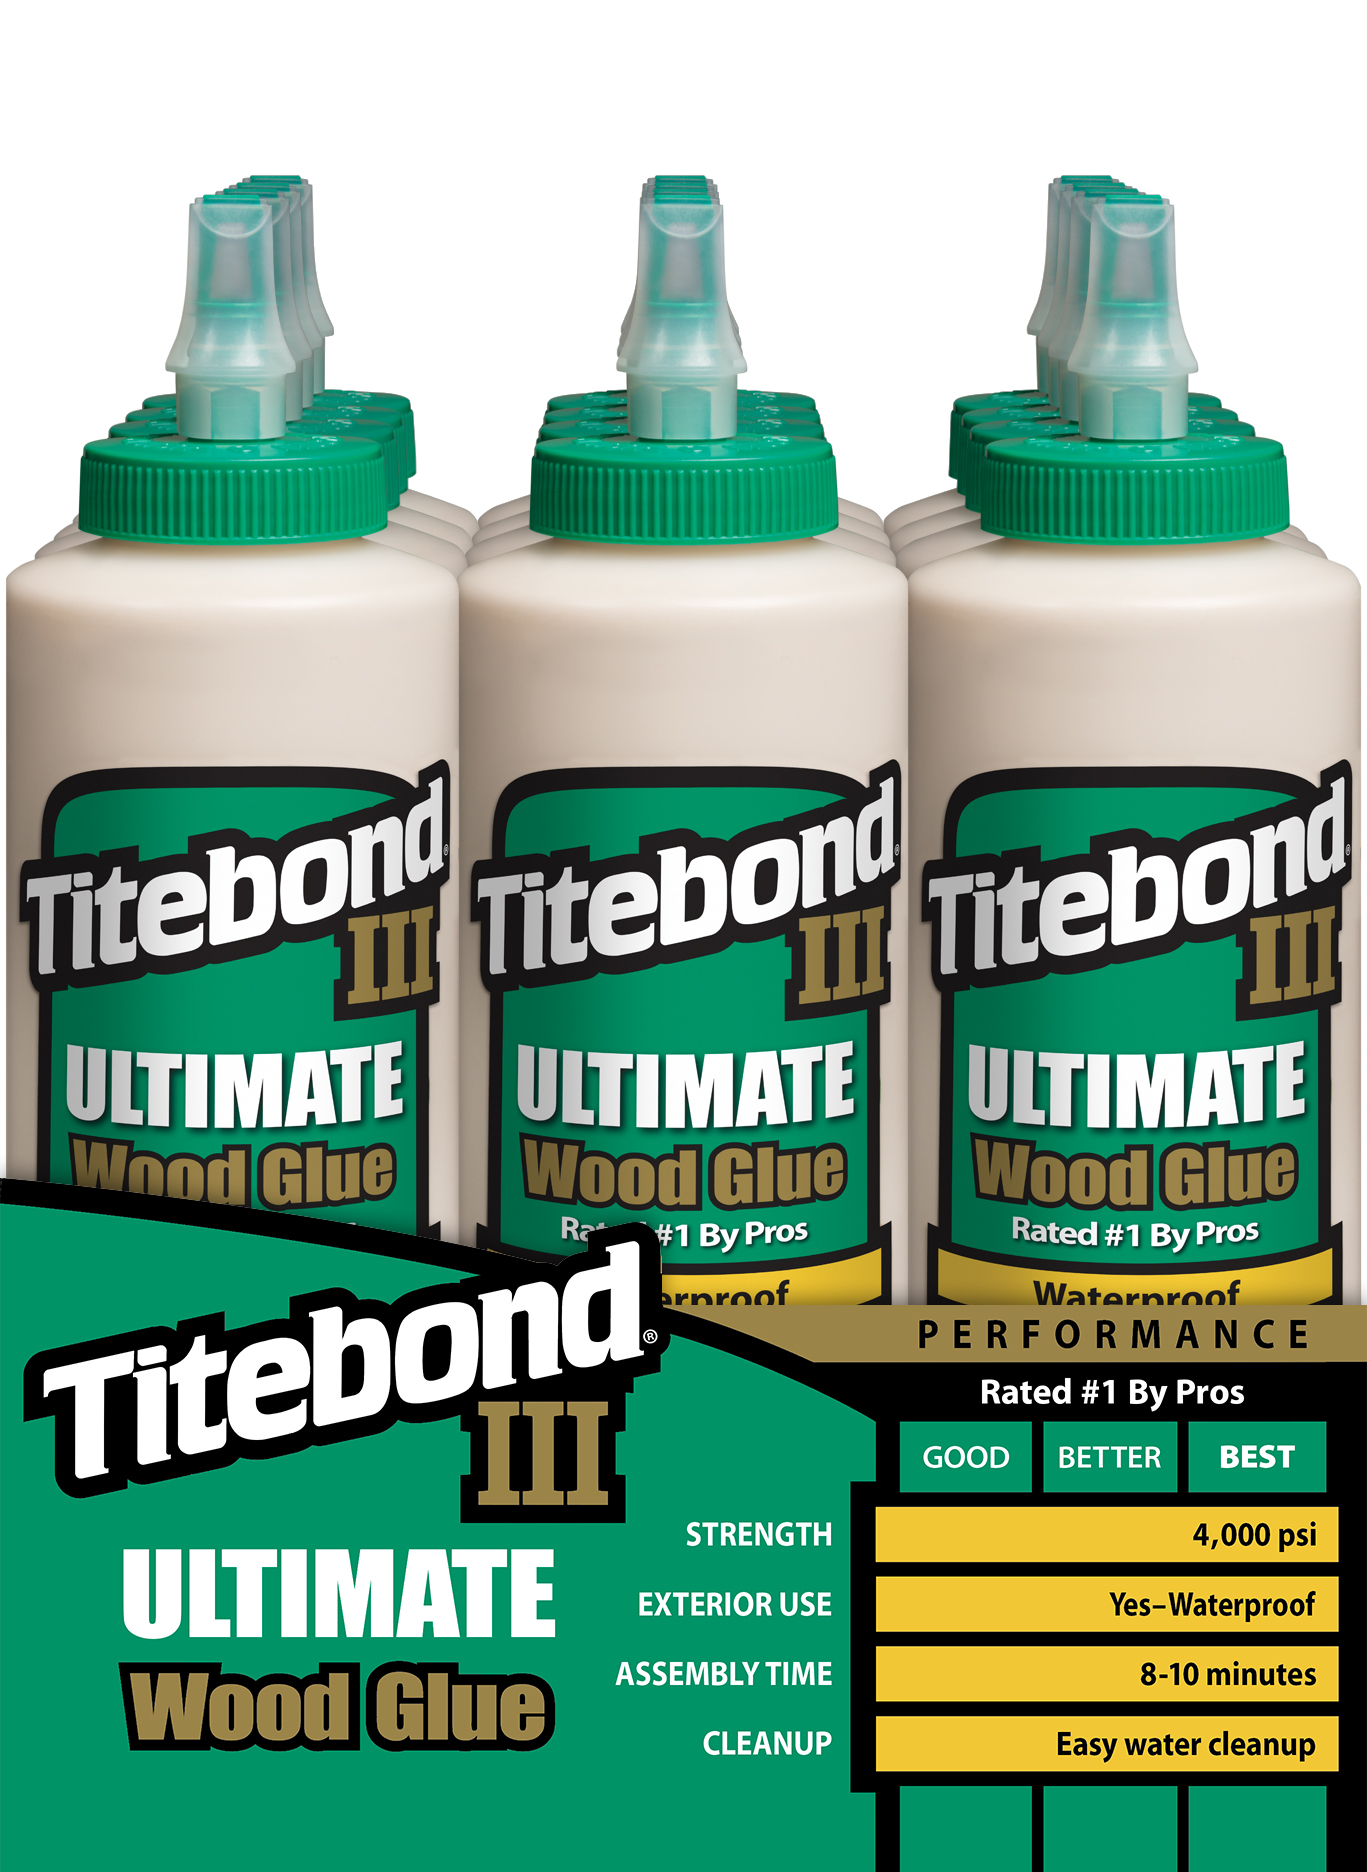 Buy the Titebond 1416 Titebond III Ultimate Wood Glue ~ Gallon